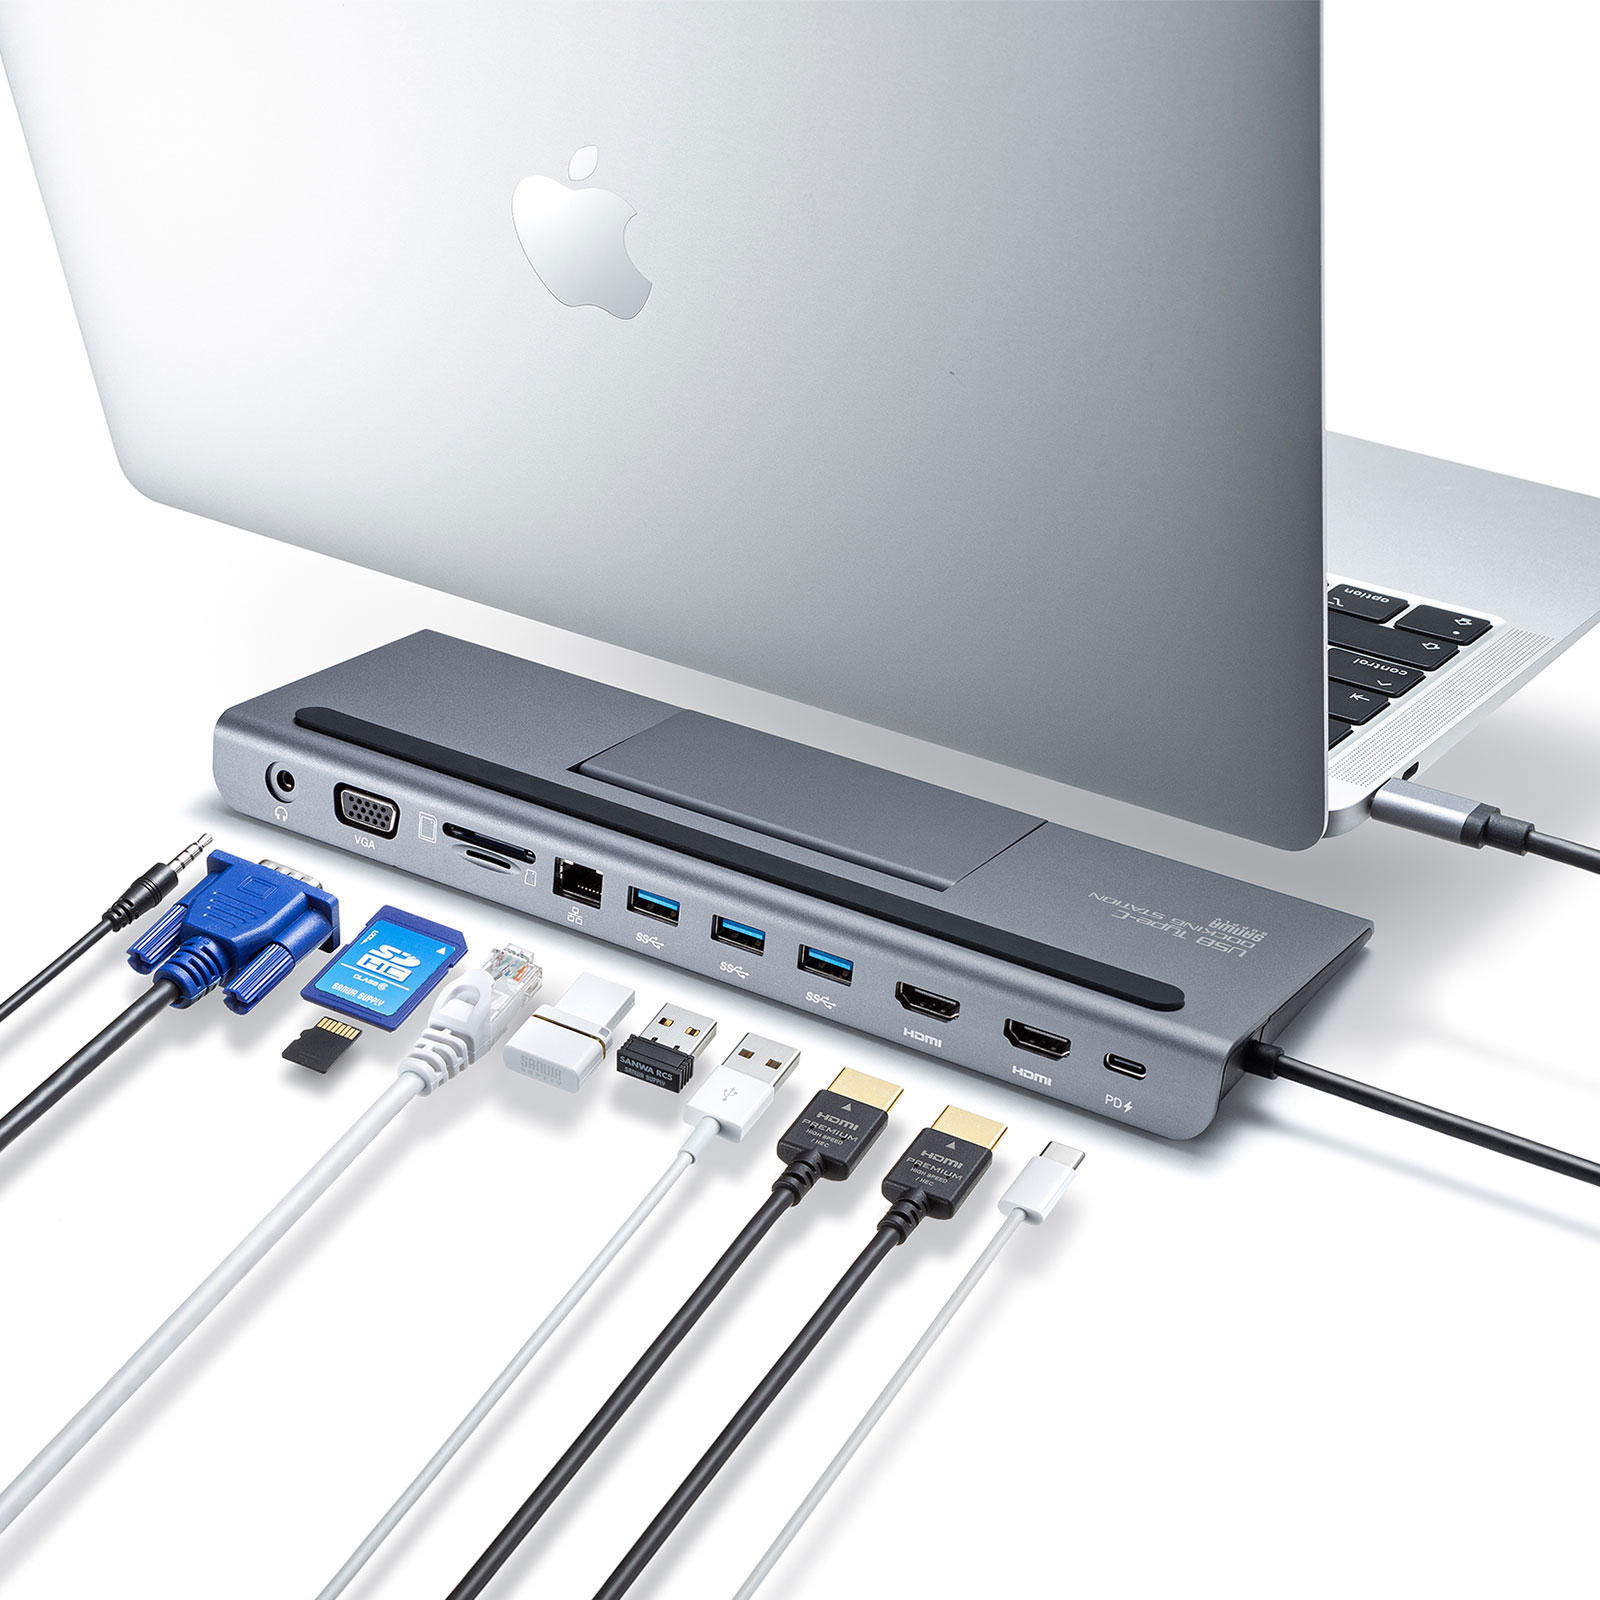 USB Type-Cケーブル1本で様々な機器を一括で接続できるHDMI 